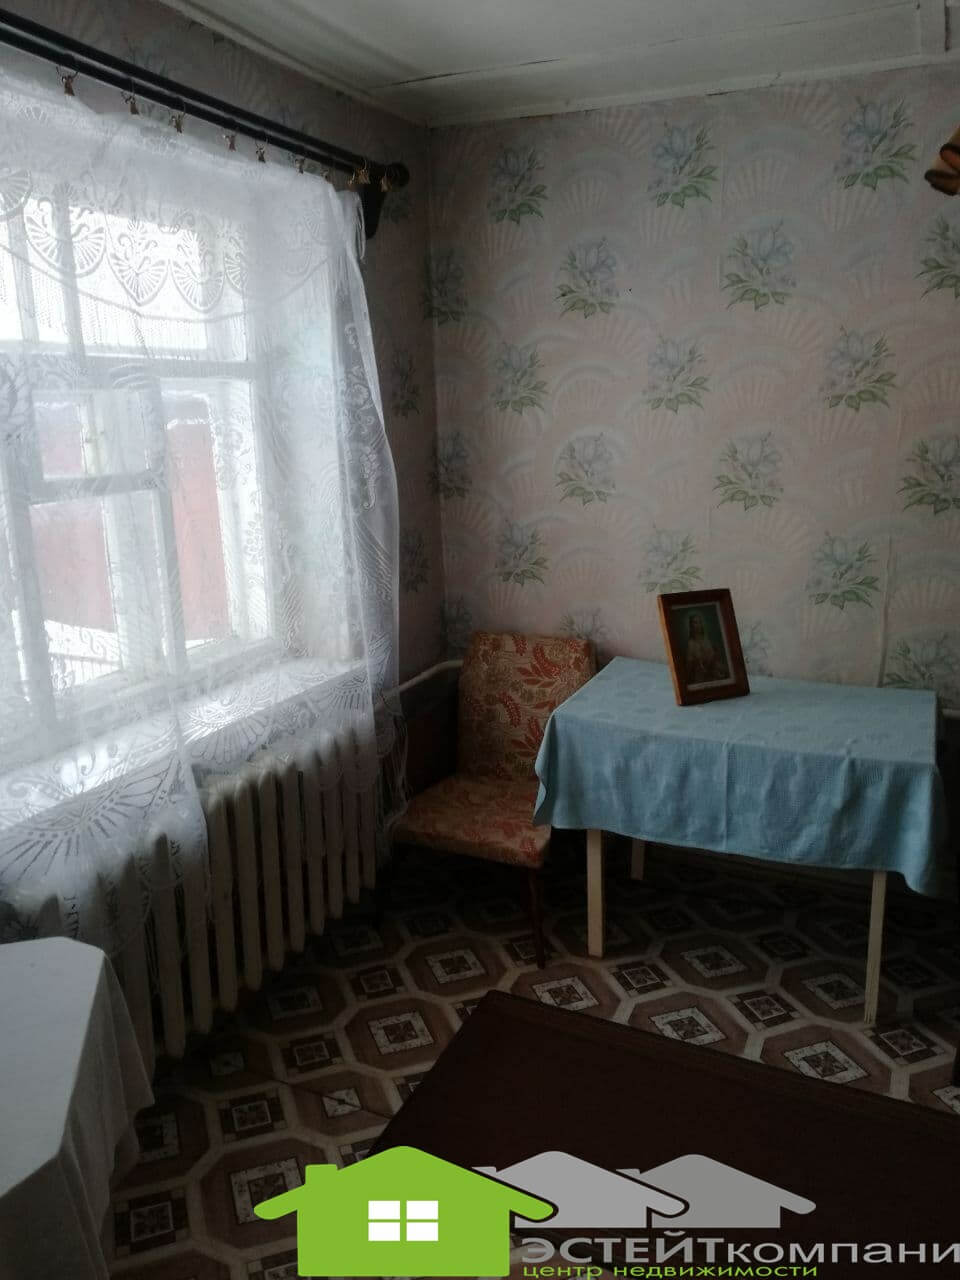 Фото Купить дом на ул. Молодежная в Лиде  (№42/2) 44